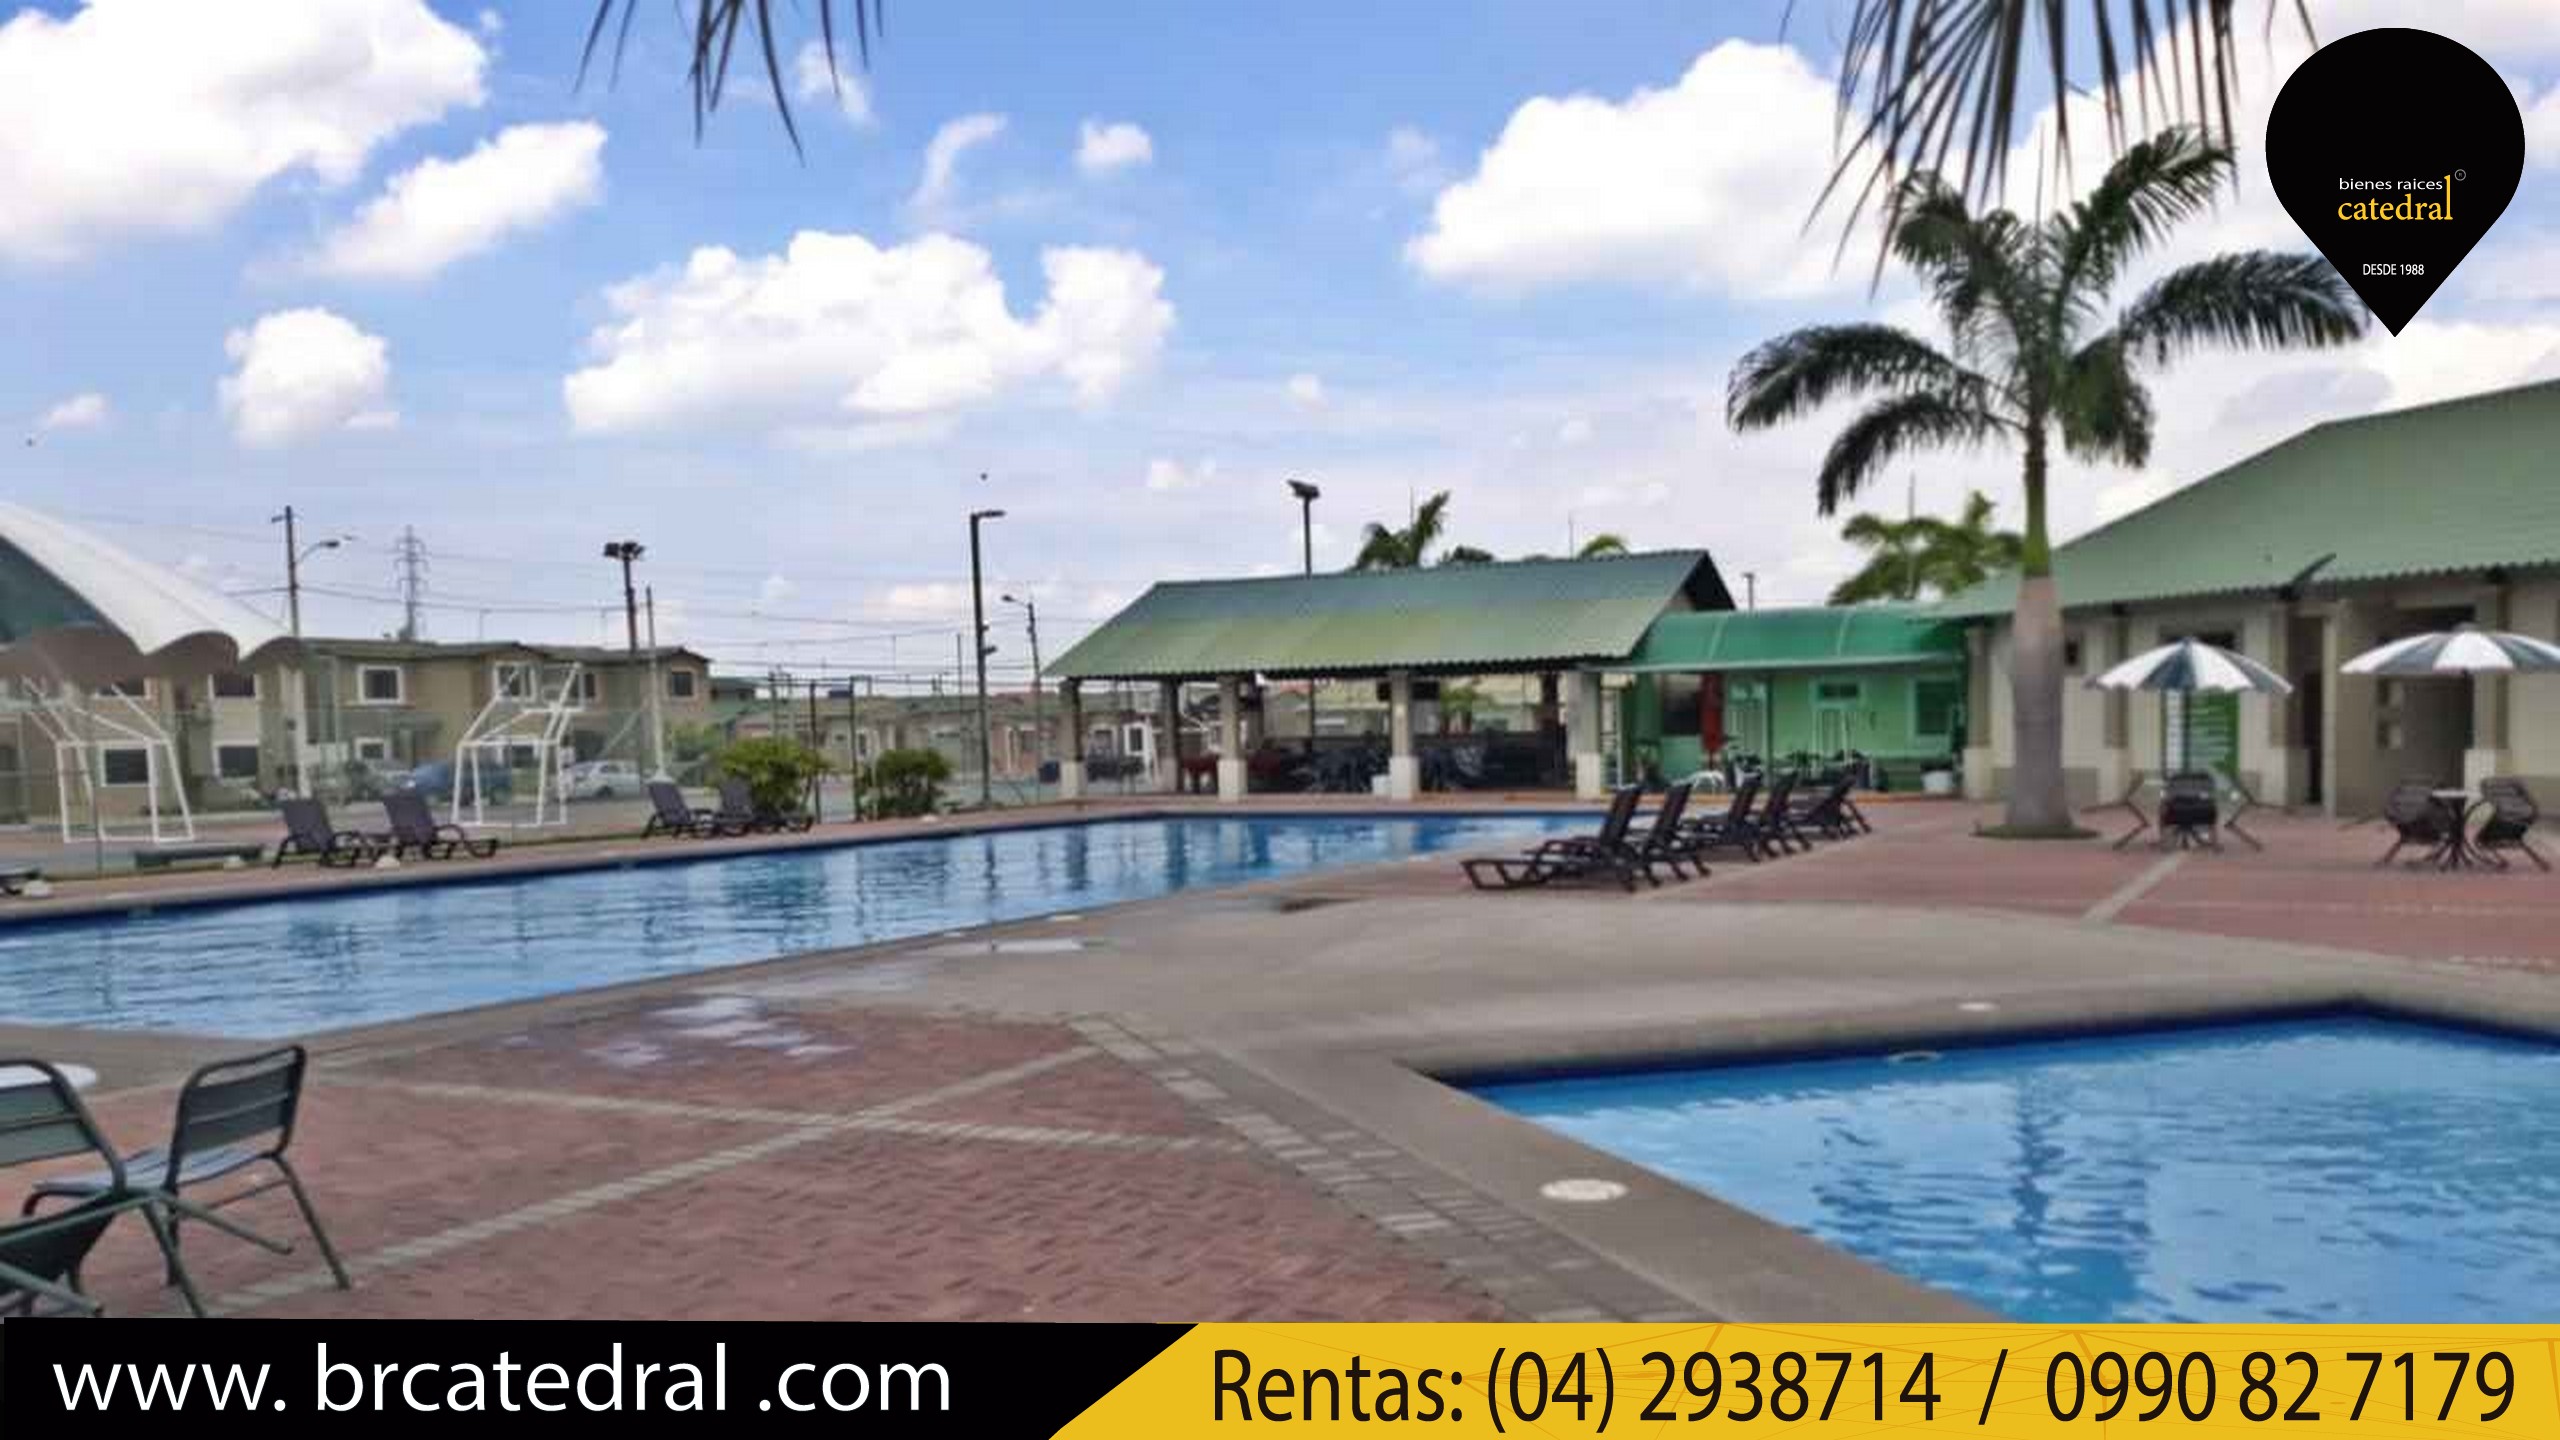 Villa Casa de Alquiler en Guayaquil Ecuador sector La Joya - Esmeraldas